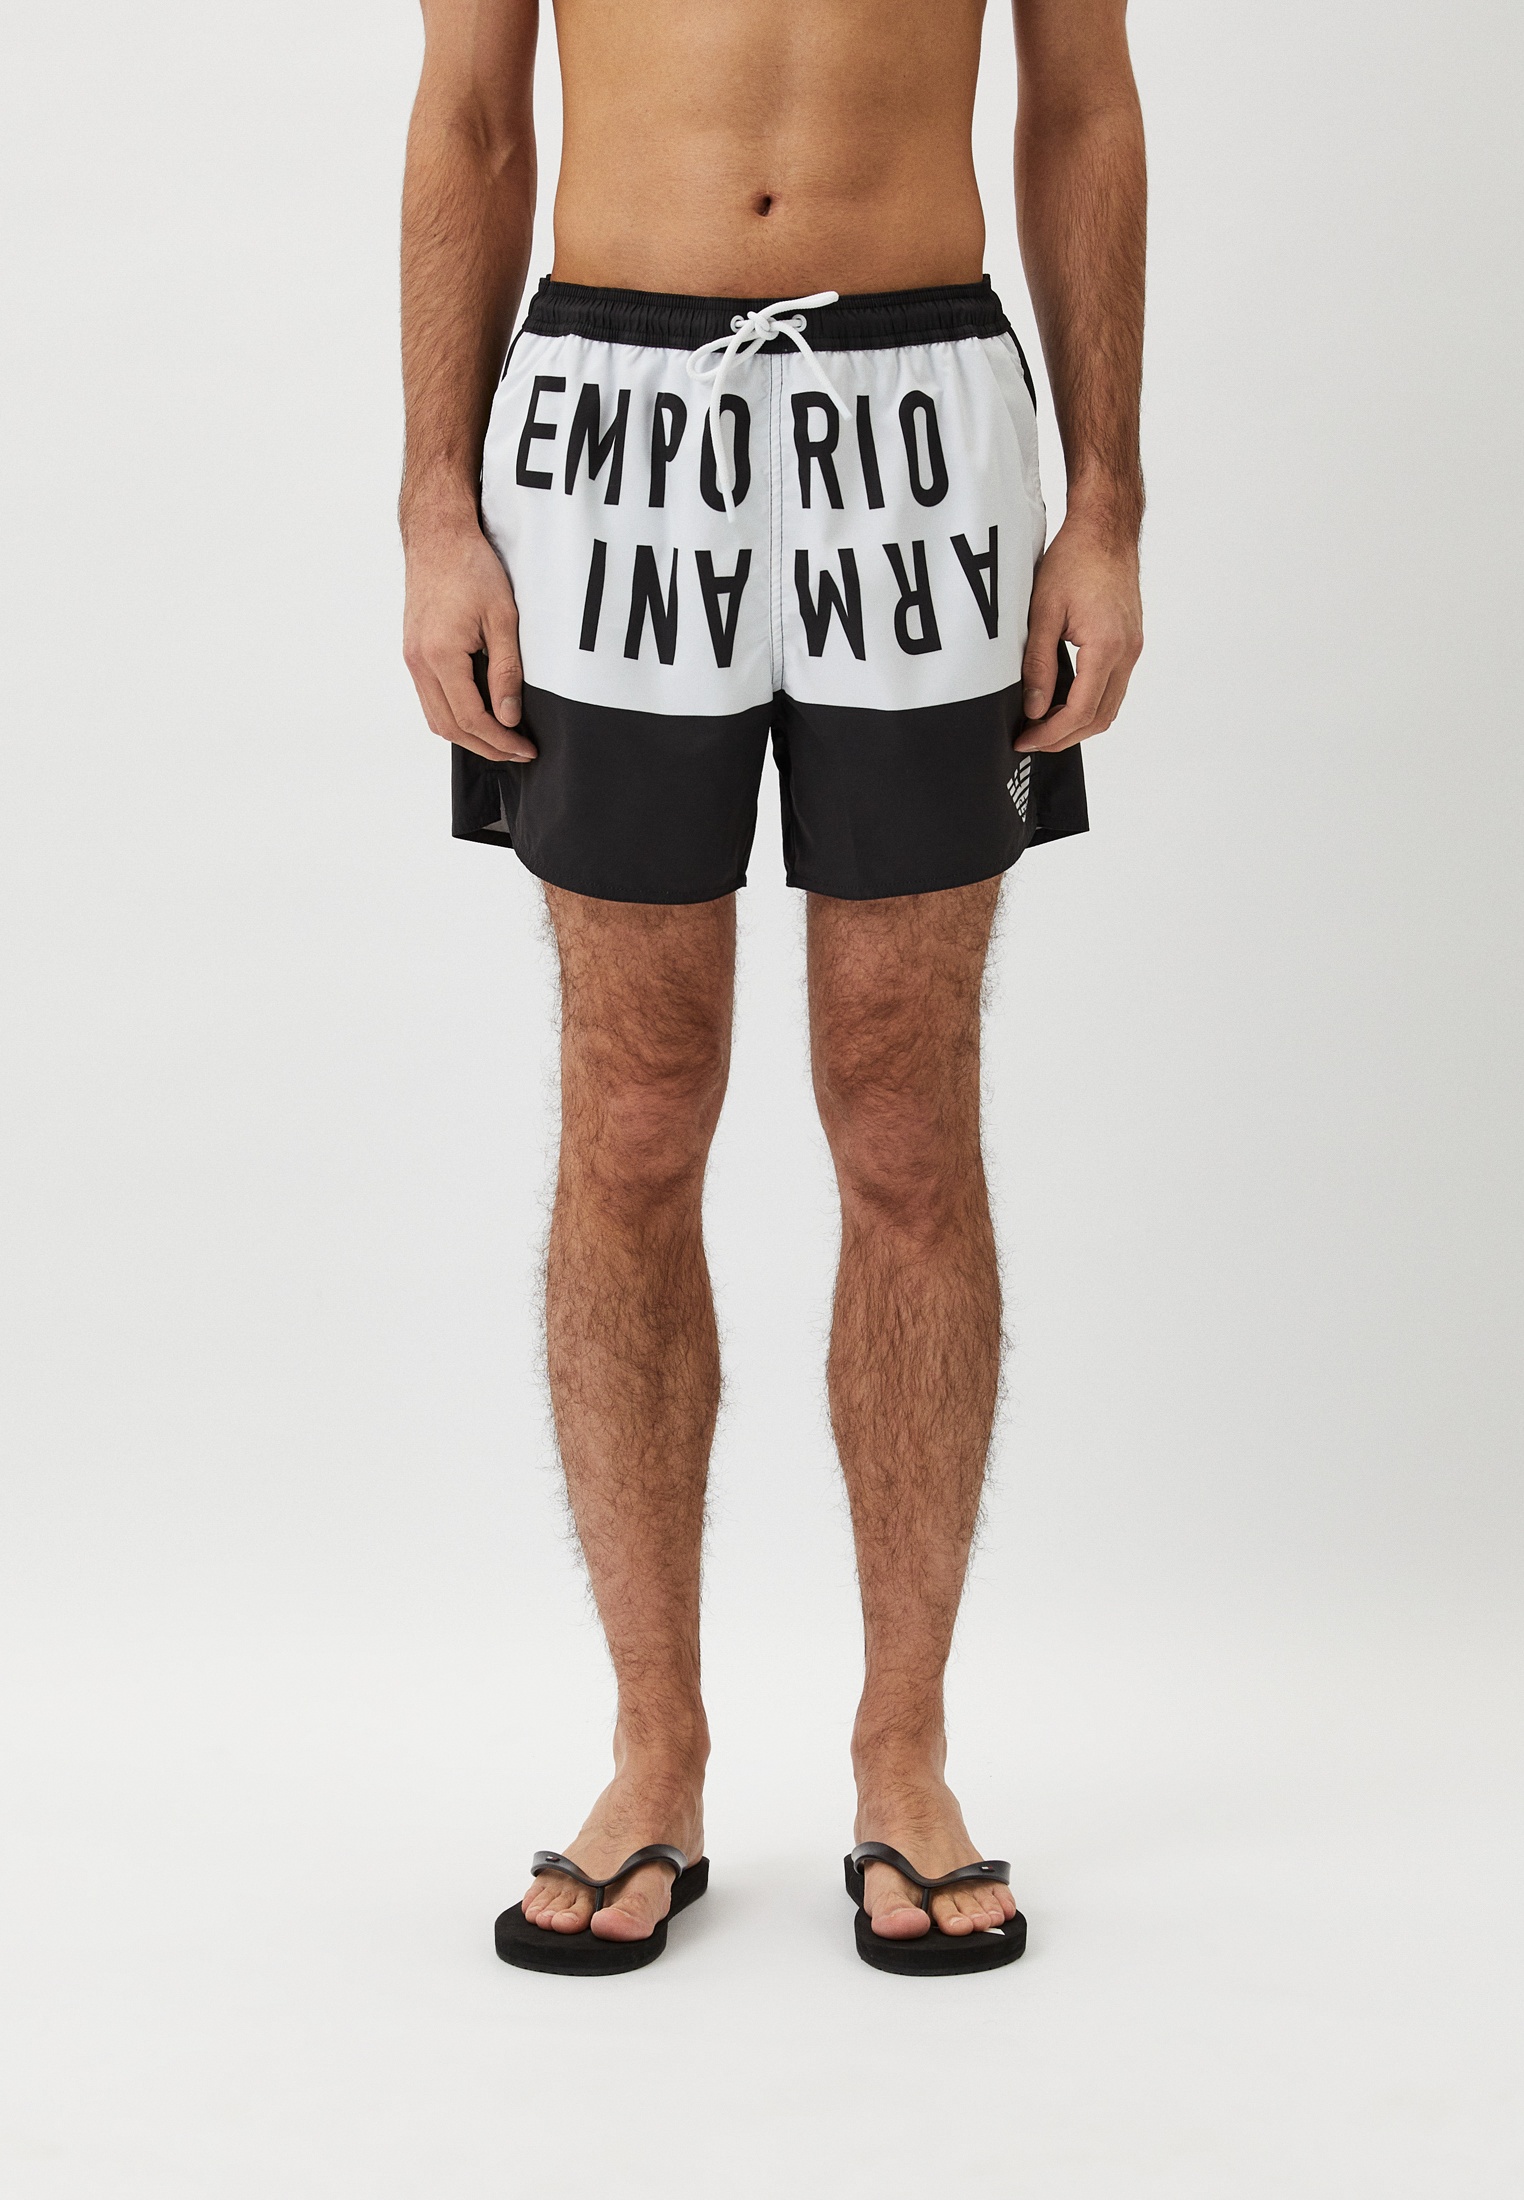 Мужские шорты для плавания Emporio Armani (Эмпорио Армани) 211740 4R424: изображение 1